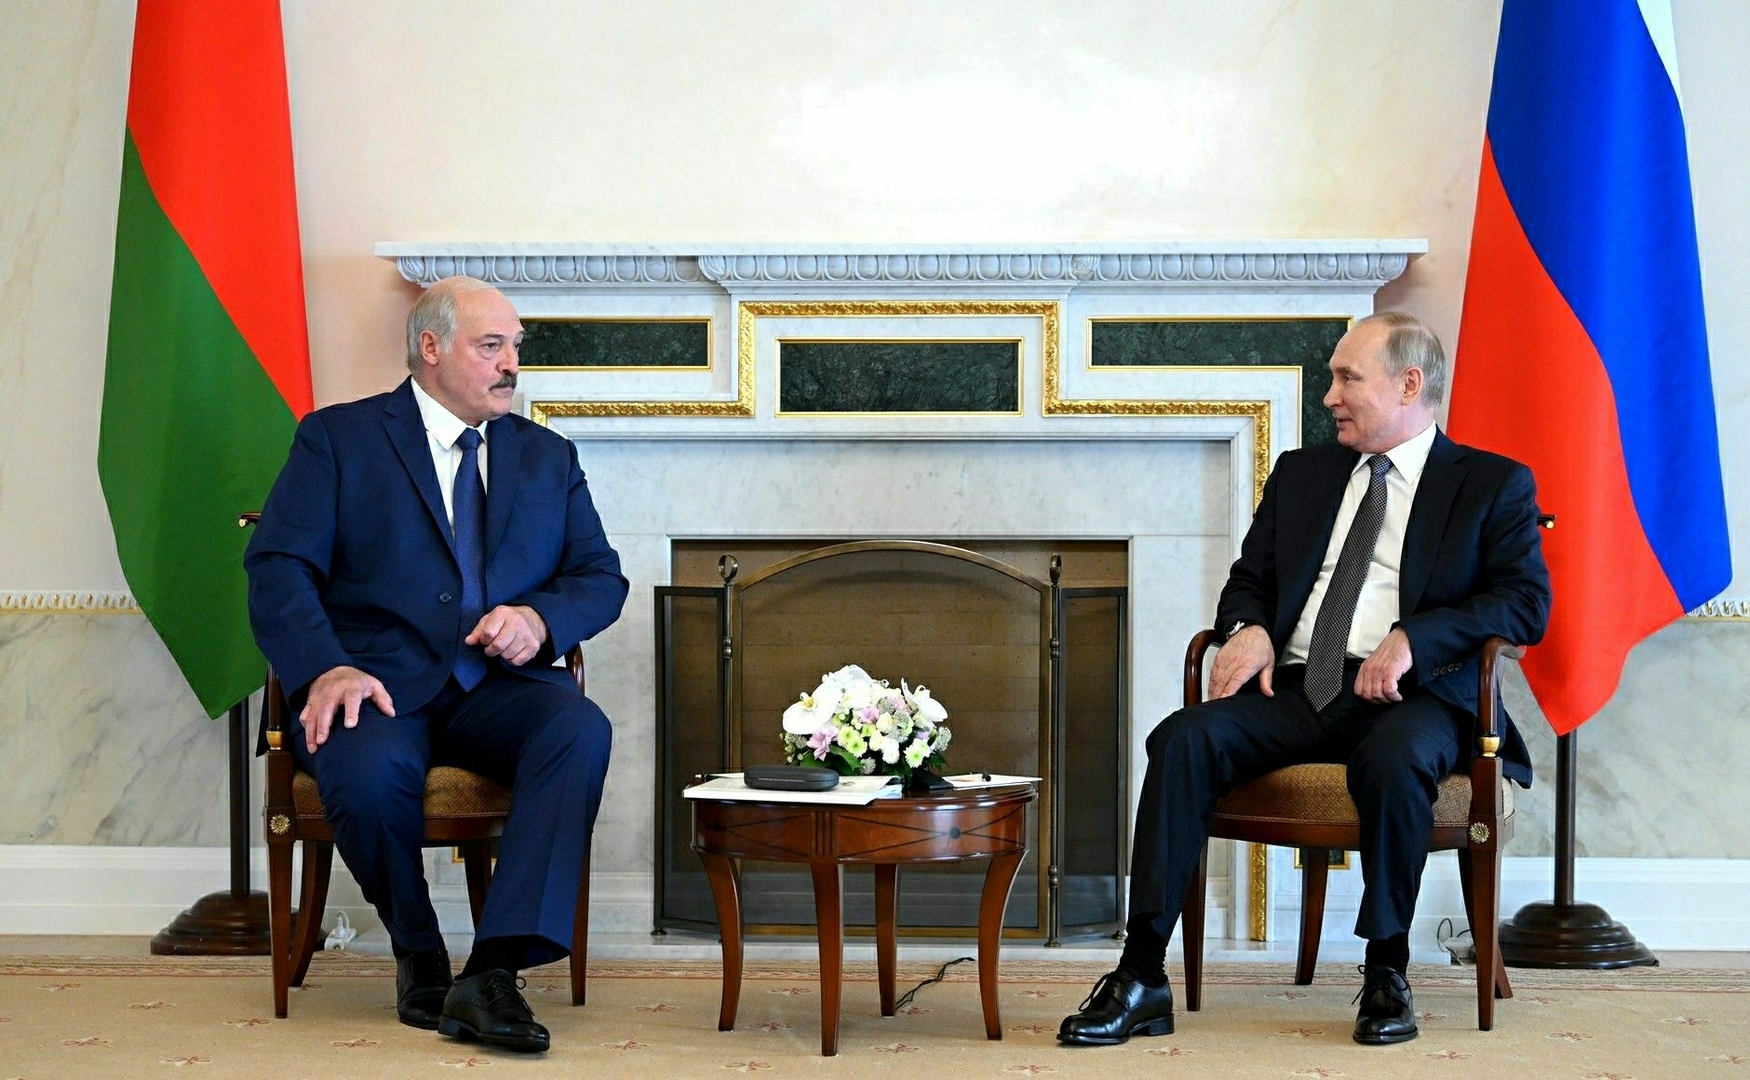 بوتين يبحث مع لوكاشينكو التعاون بين روسيا وبيلاروس وخطط إجراء مناورات مشتركة